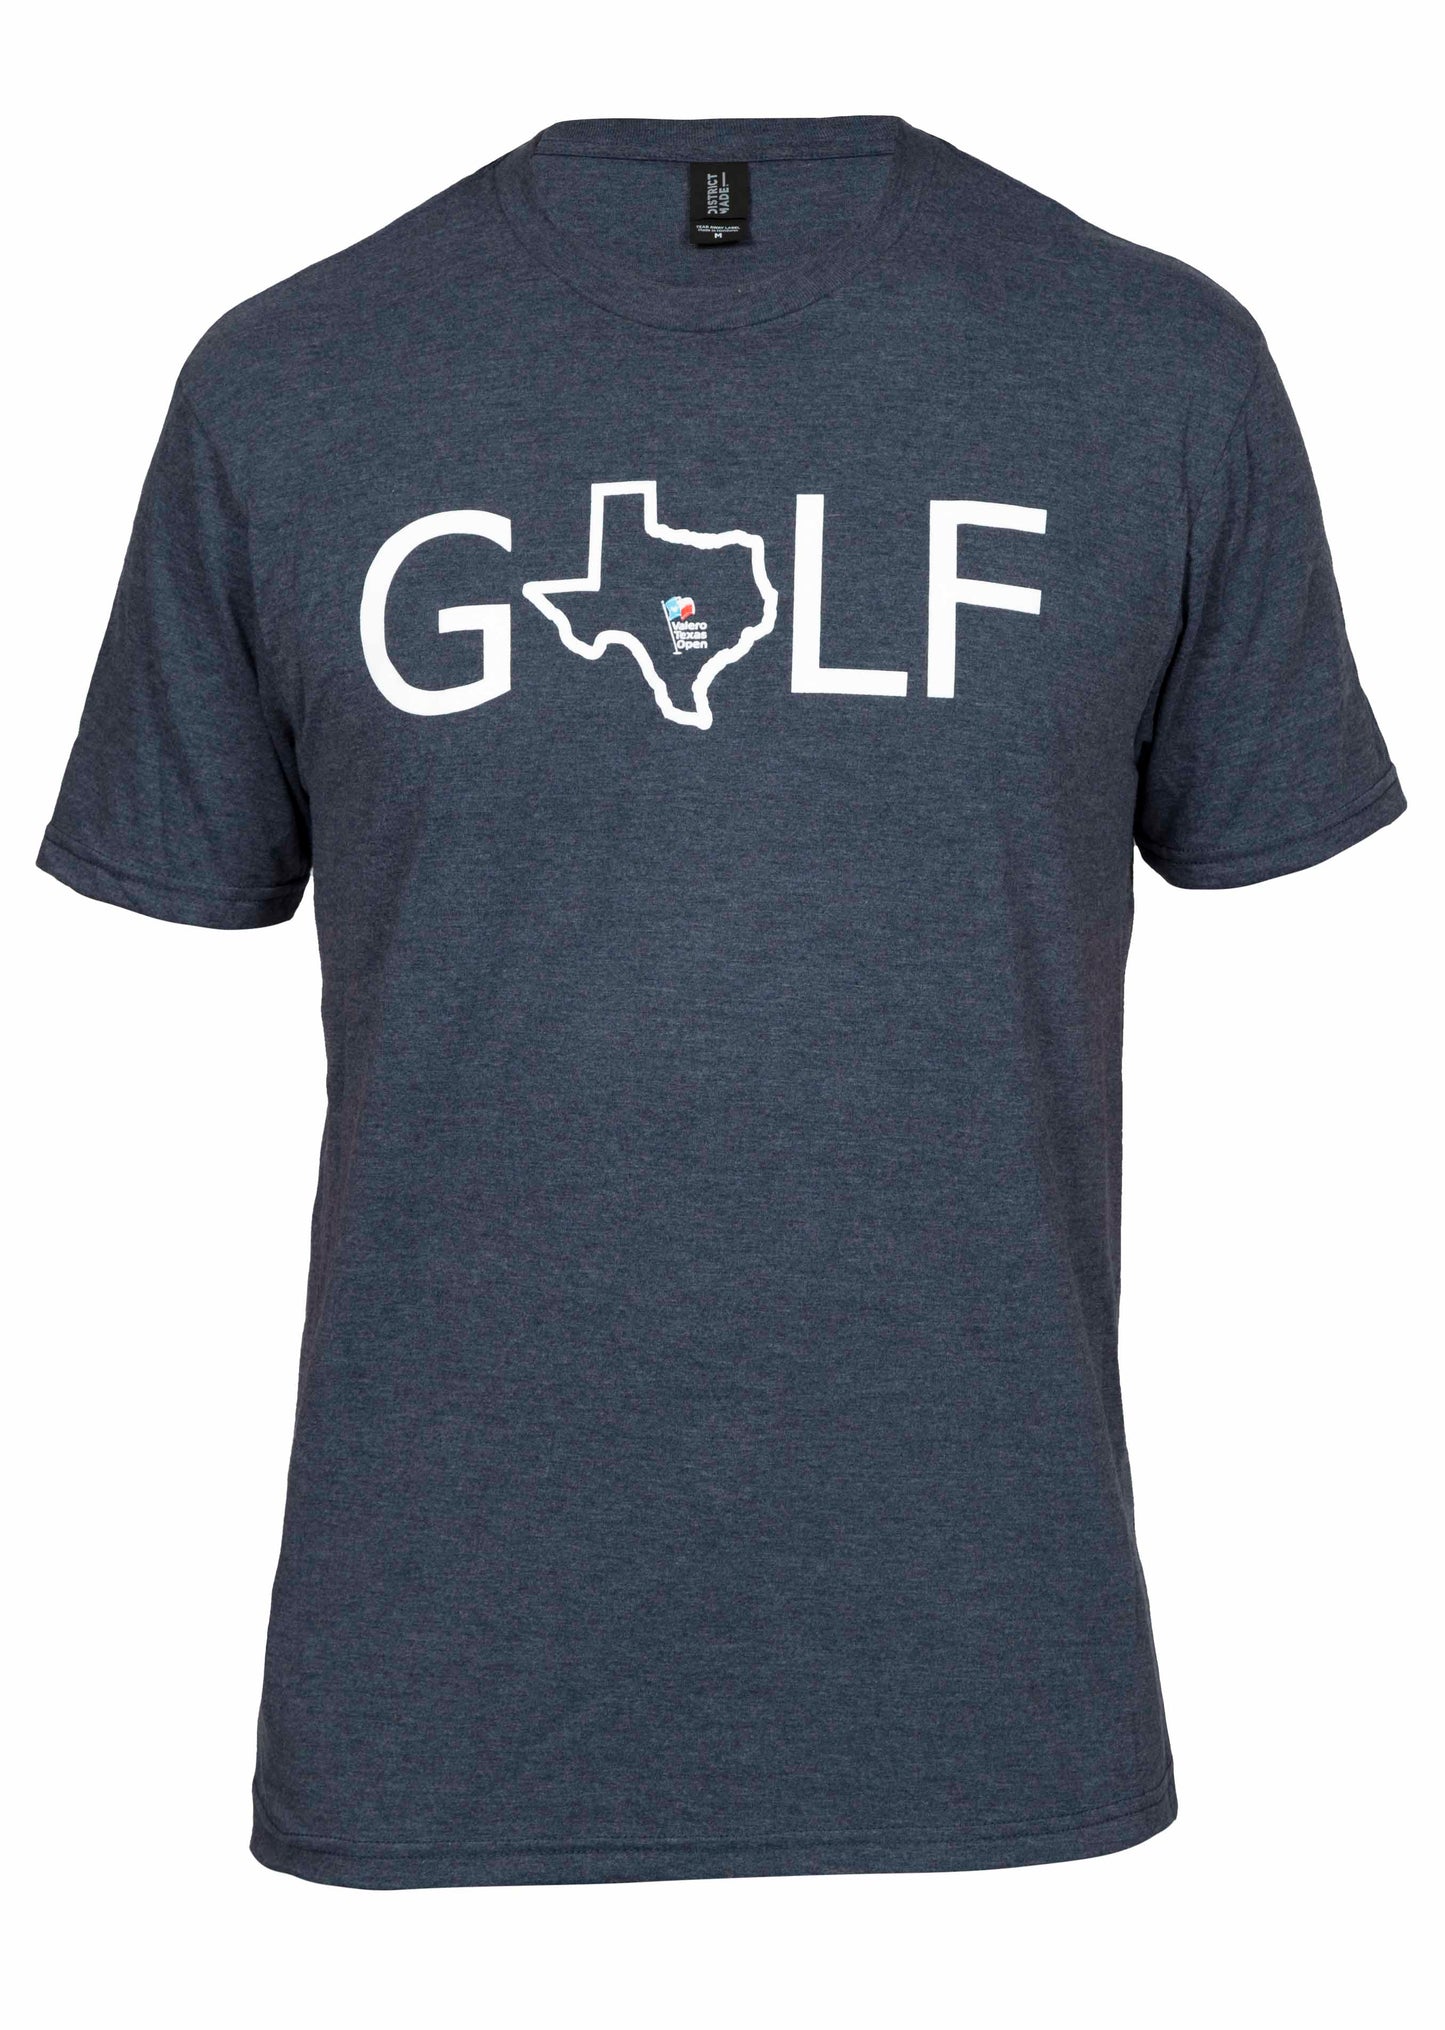 2018 GOLF T-Shirt